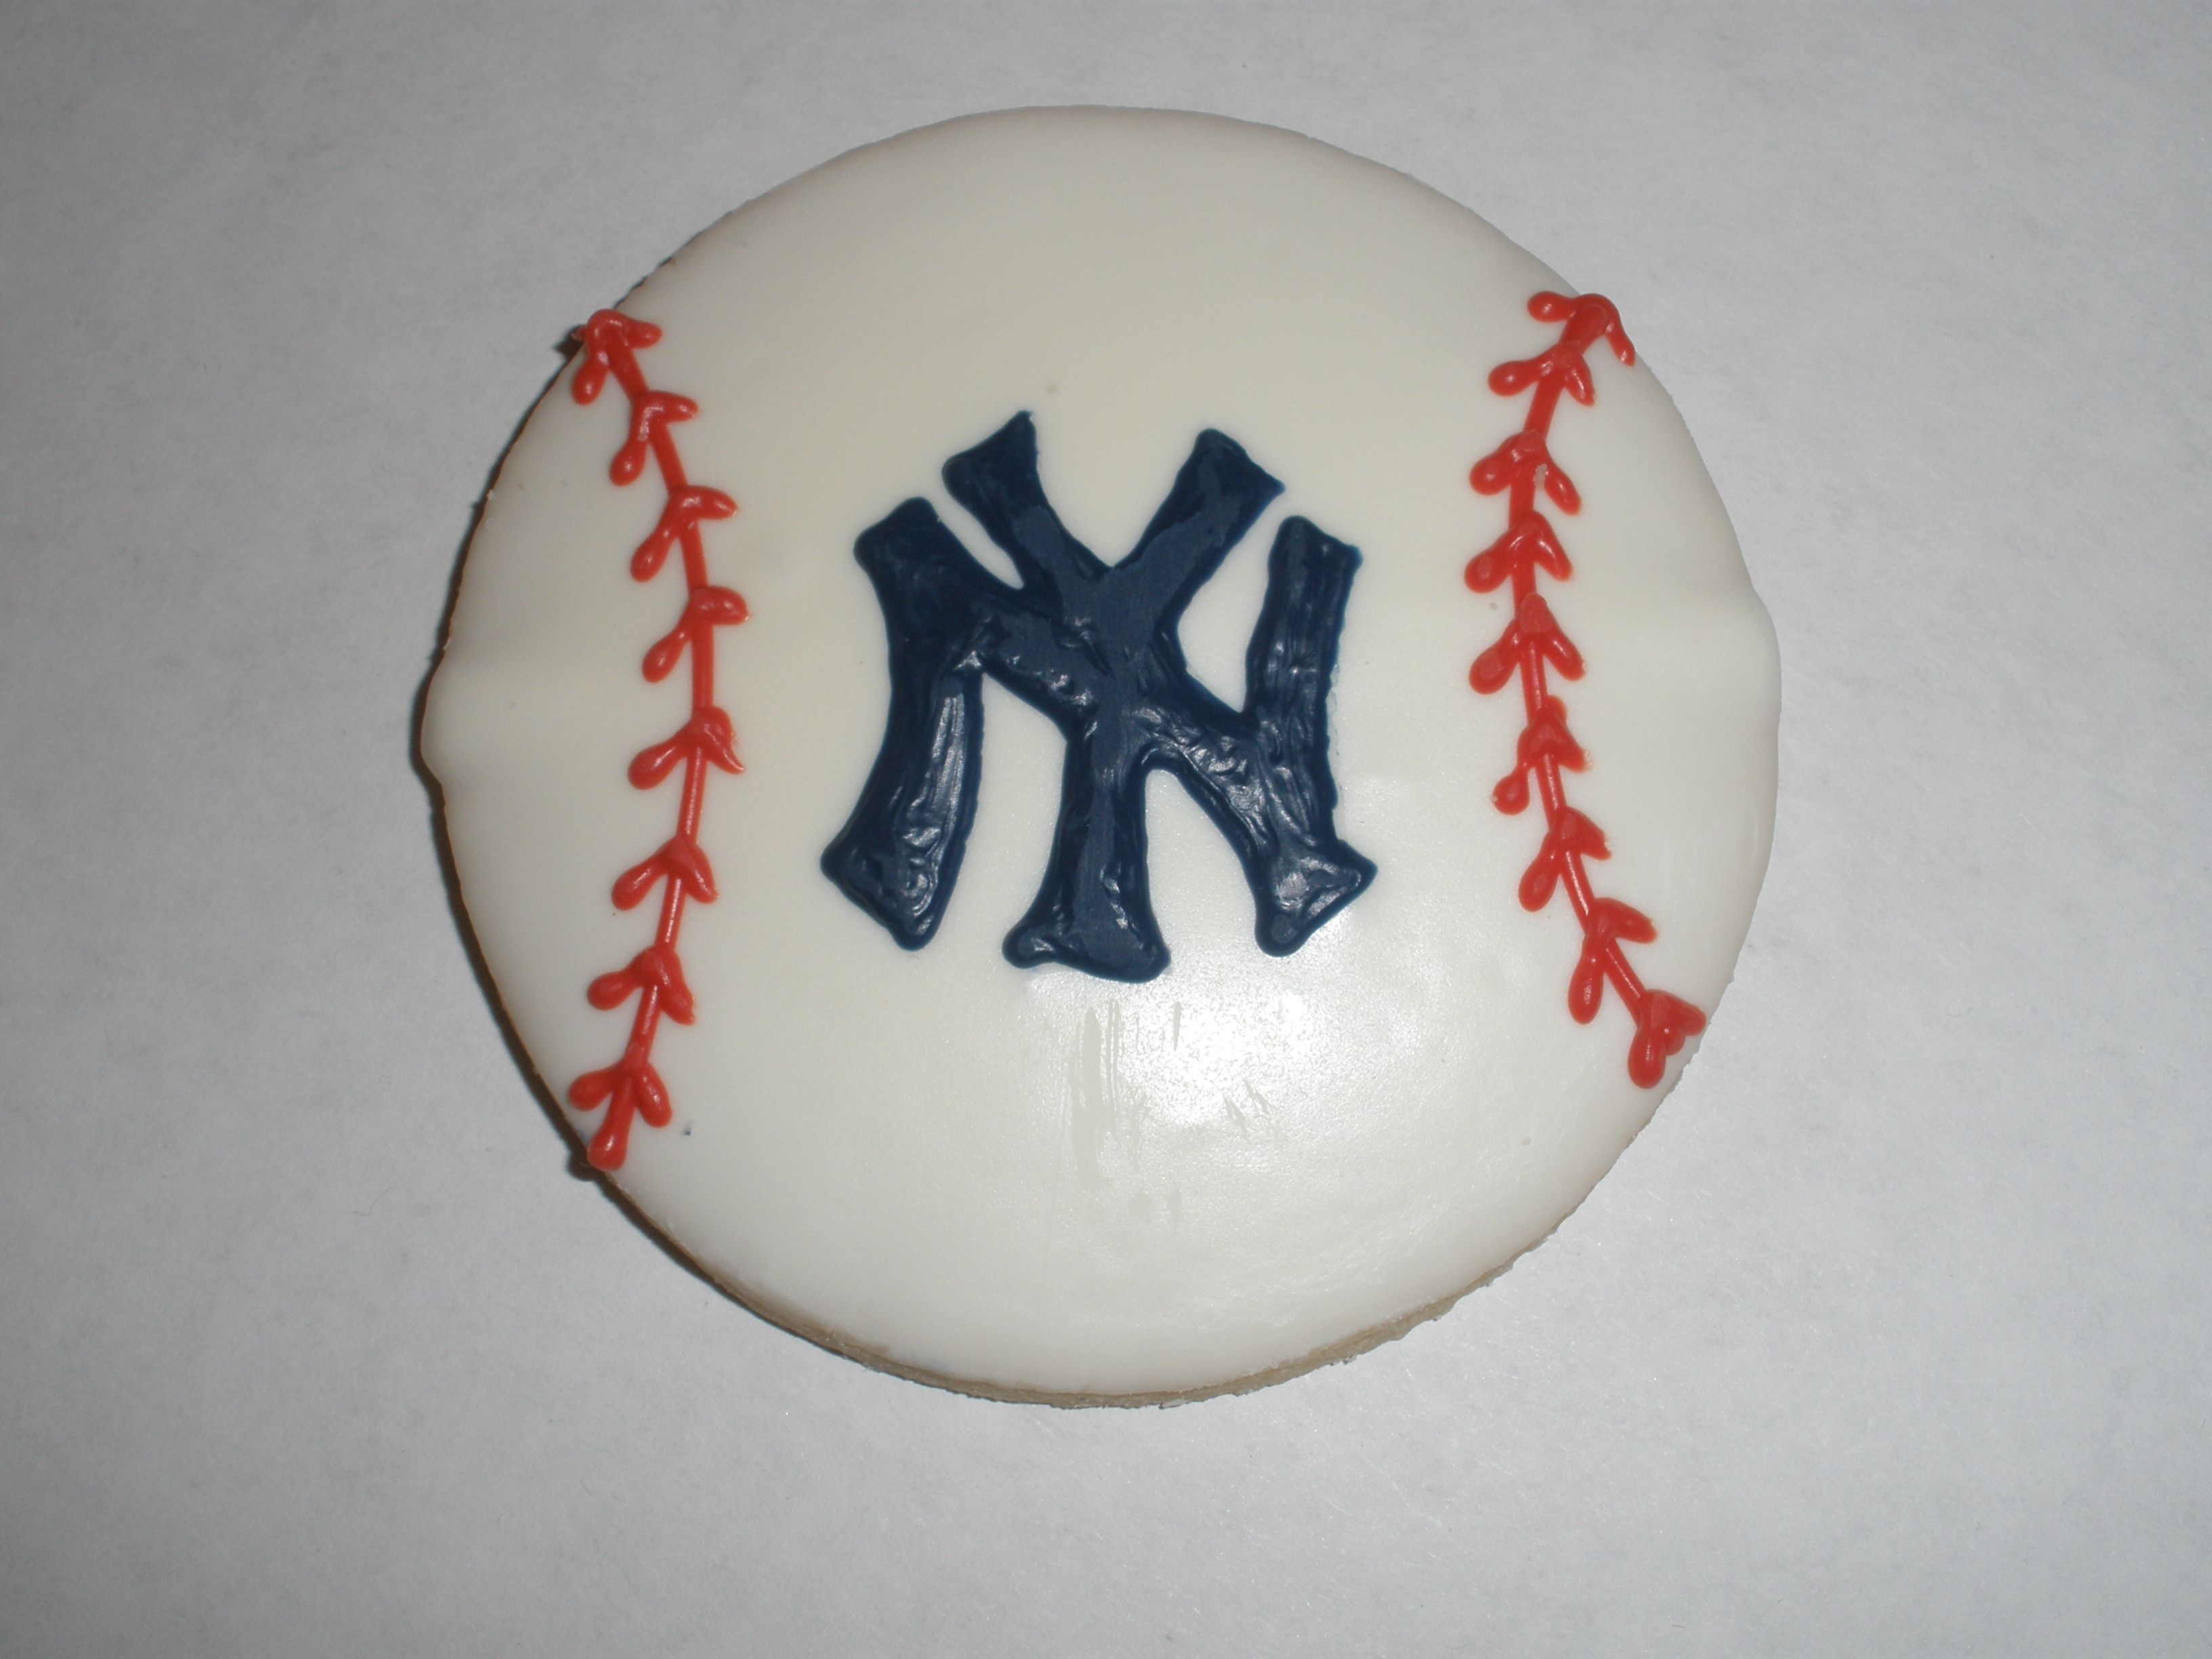 10_Sports_NY Yankees